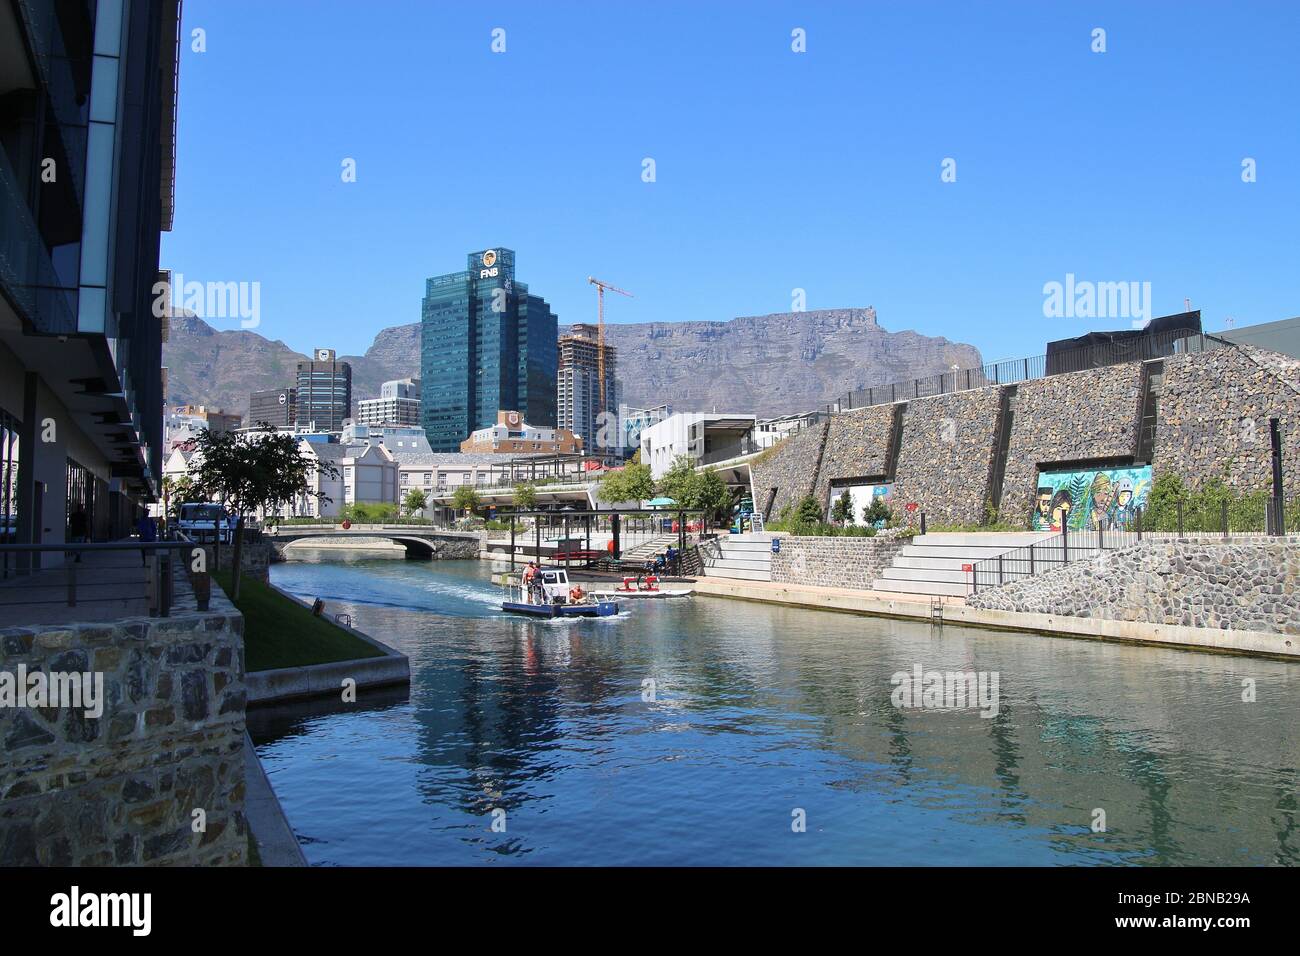 Canal und hohe Gebäude im Waterfront District von Kapstadt. Der Tafelberg im Hintergrund. Südafrika, Afrika. Stockfoto